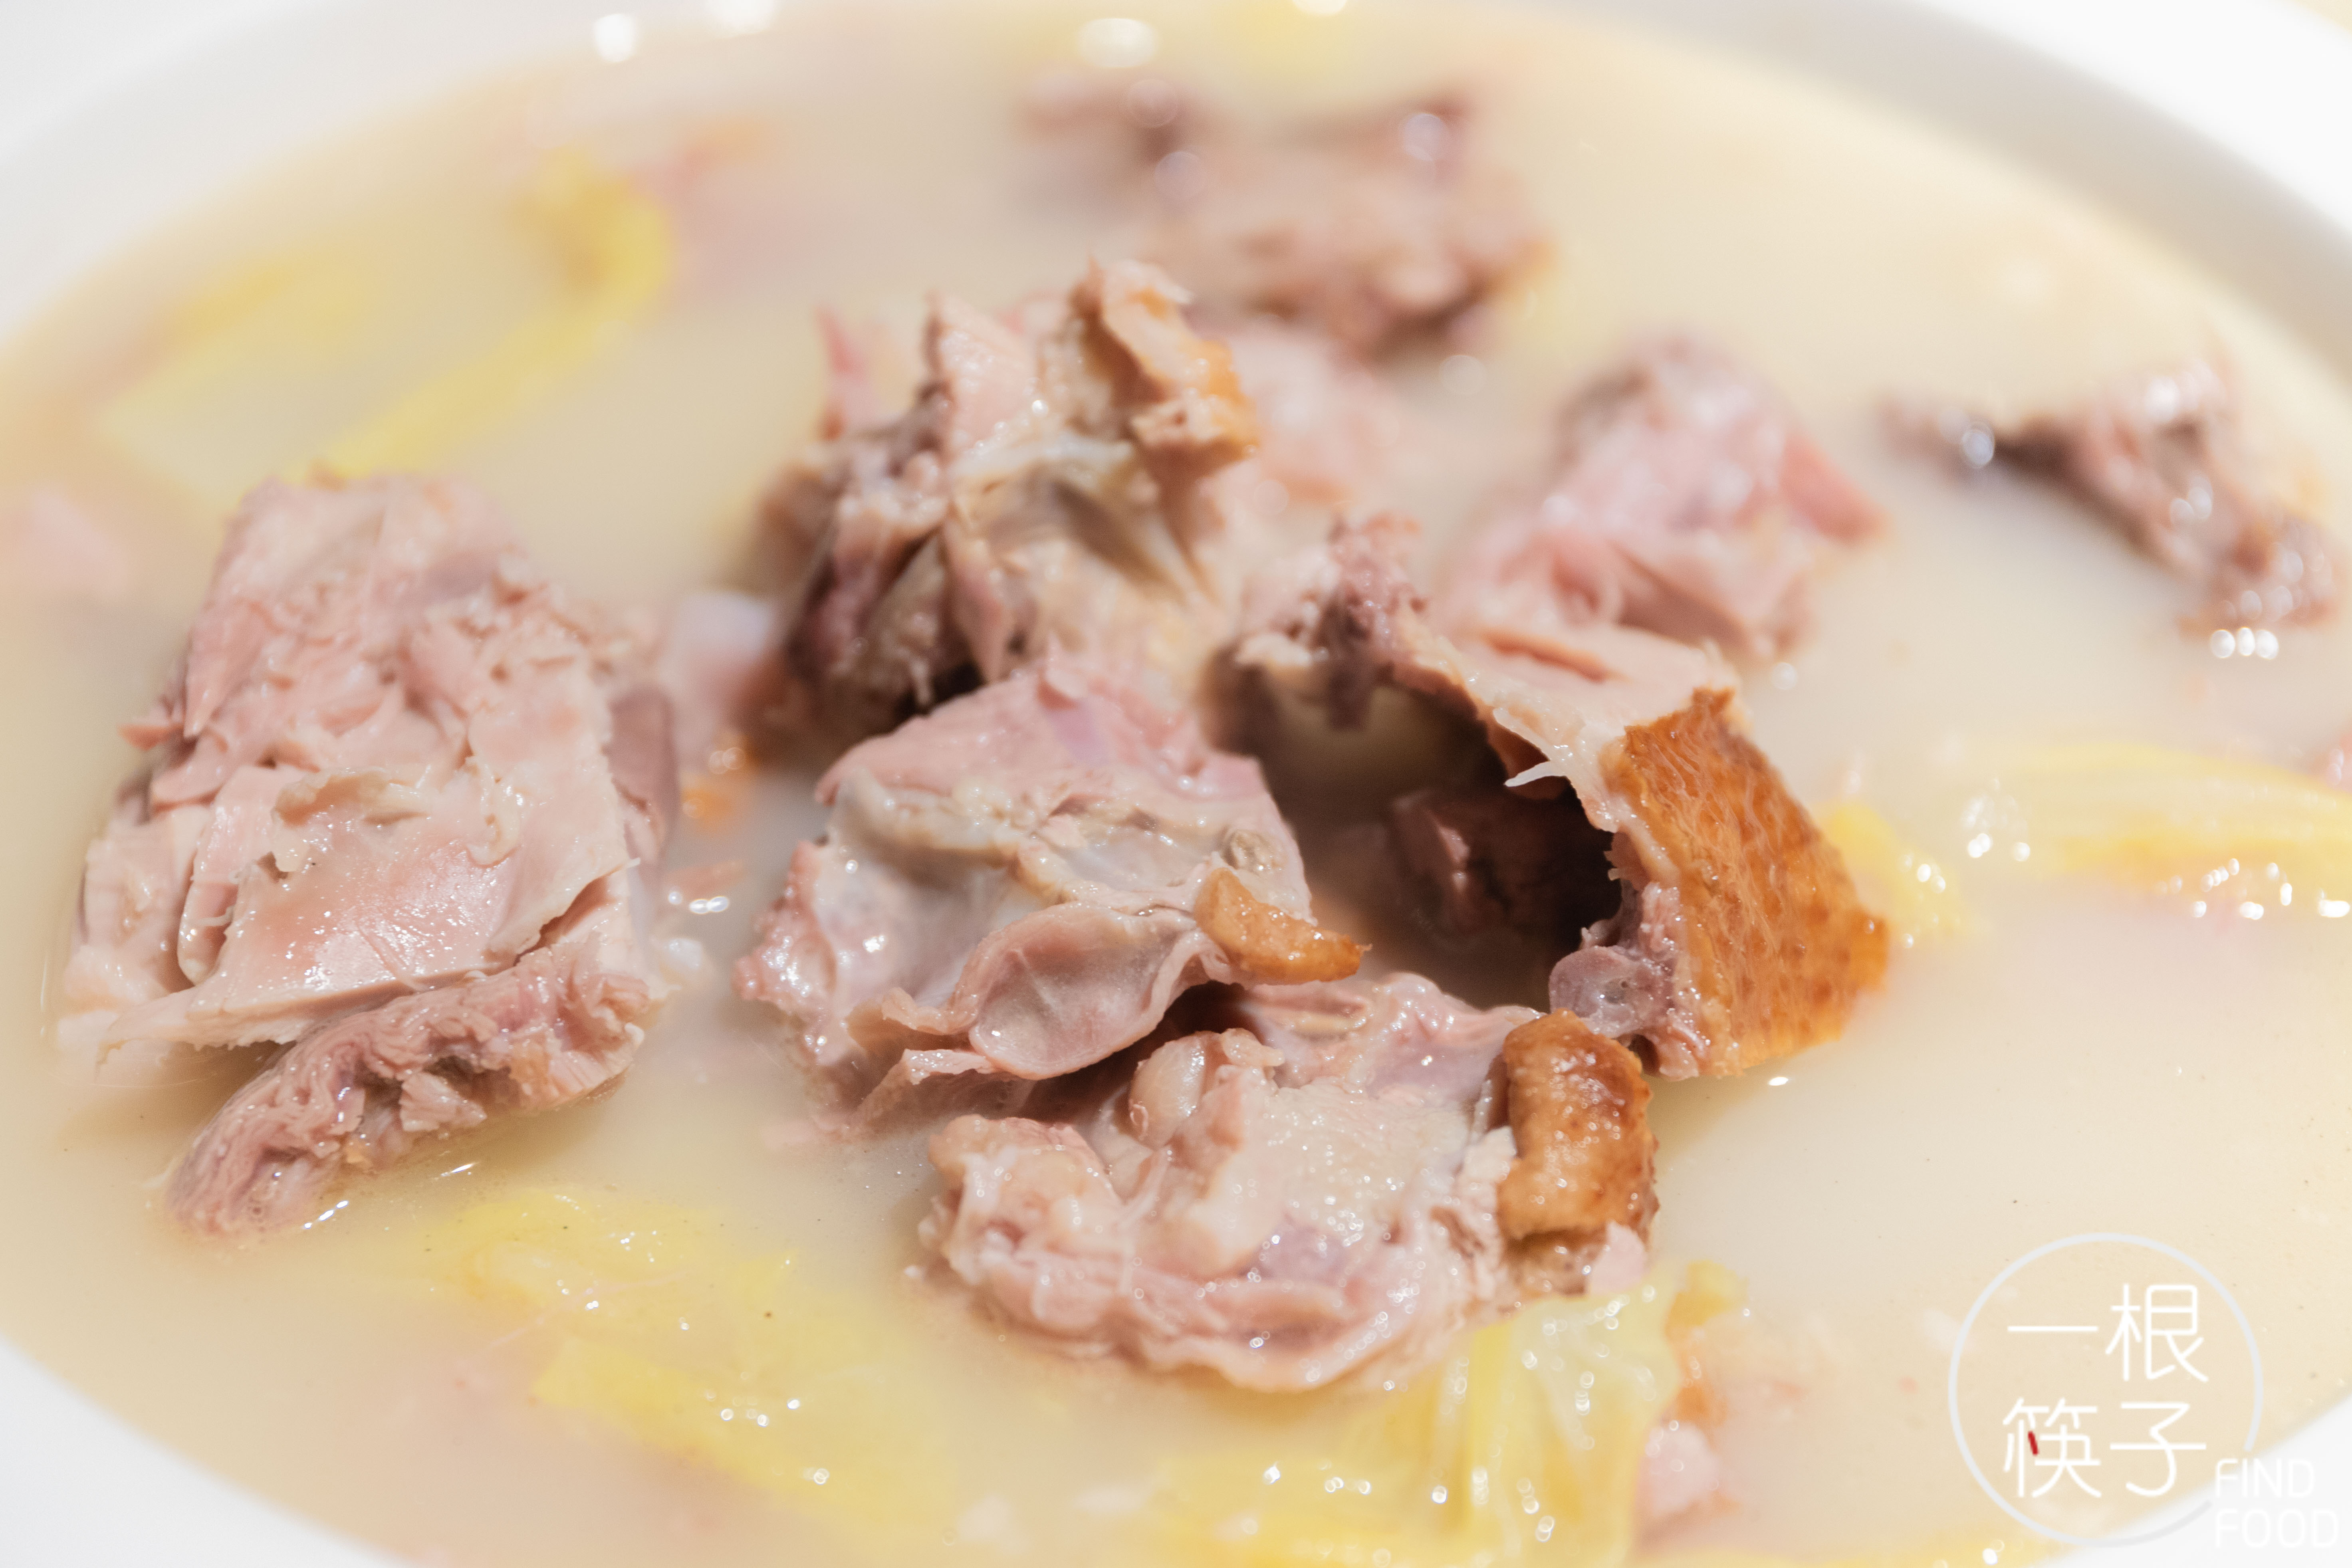 经过烤制后的鸭子,入汤炖煮后产生的那种美味让人难以抗拒,尤其是鸭肉